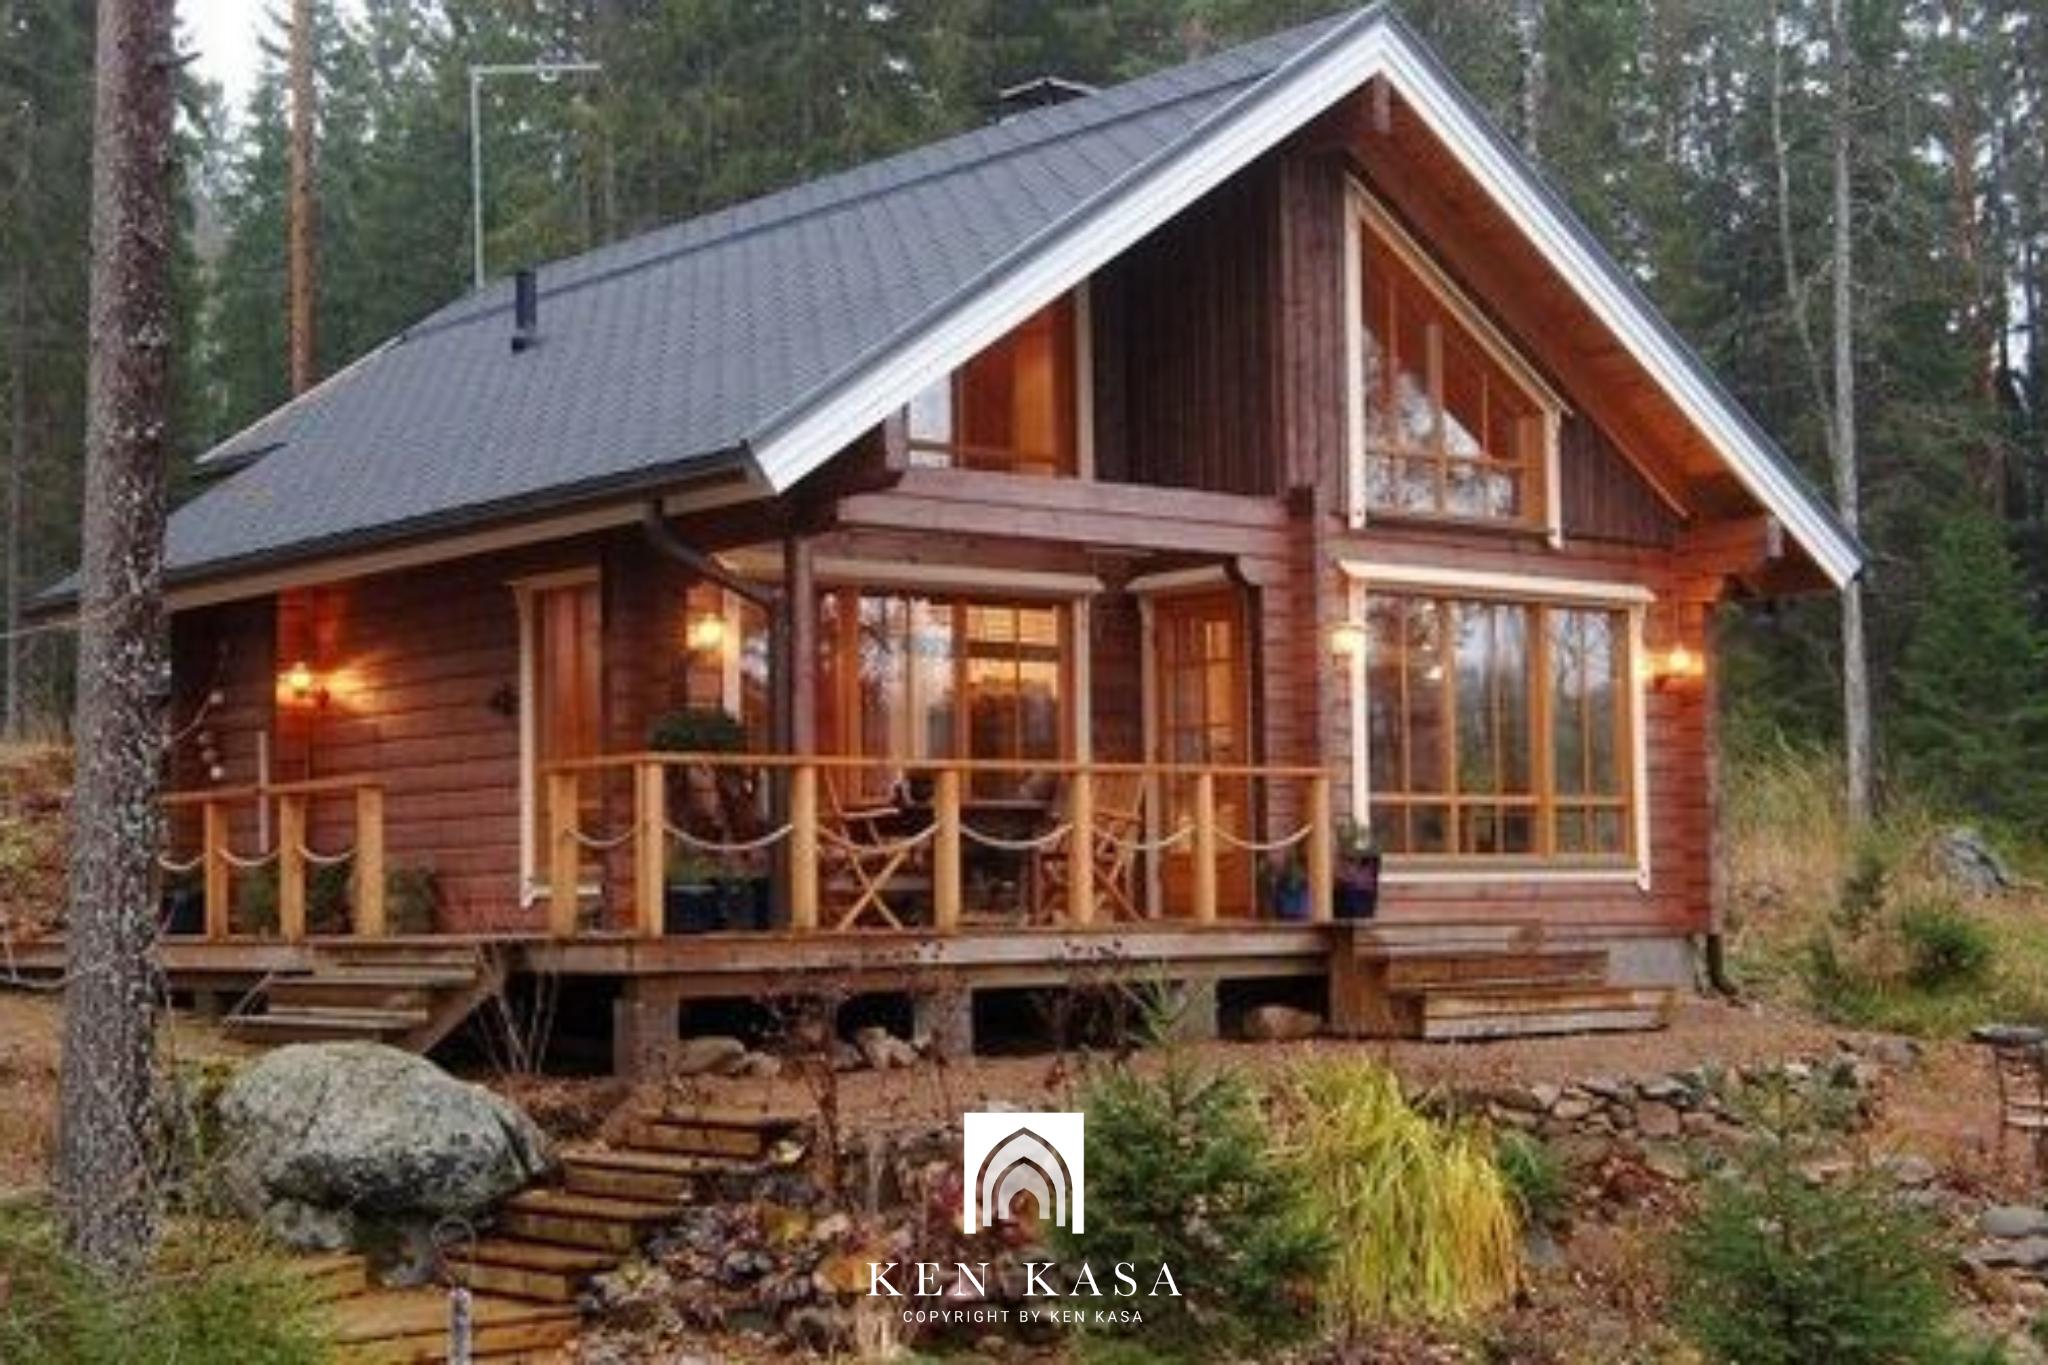 thiết kế homestay nhà vườn kiểu nhà gỗ